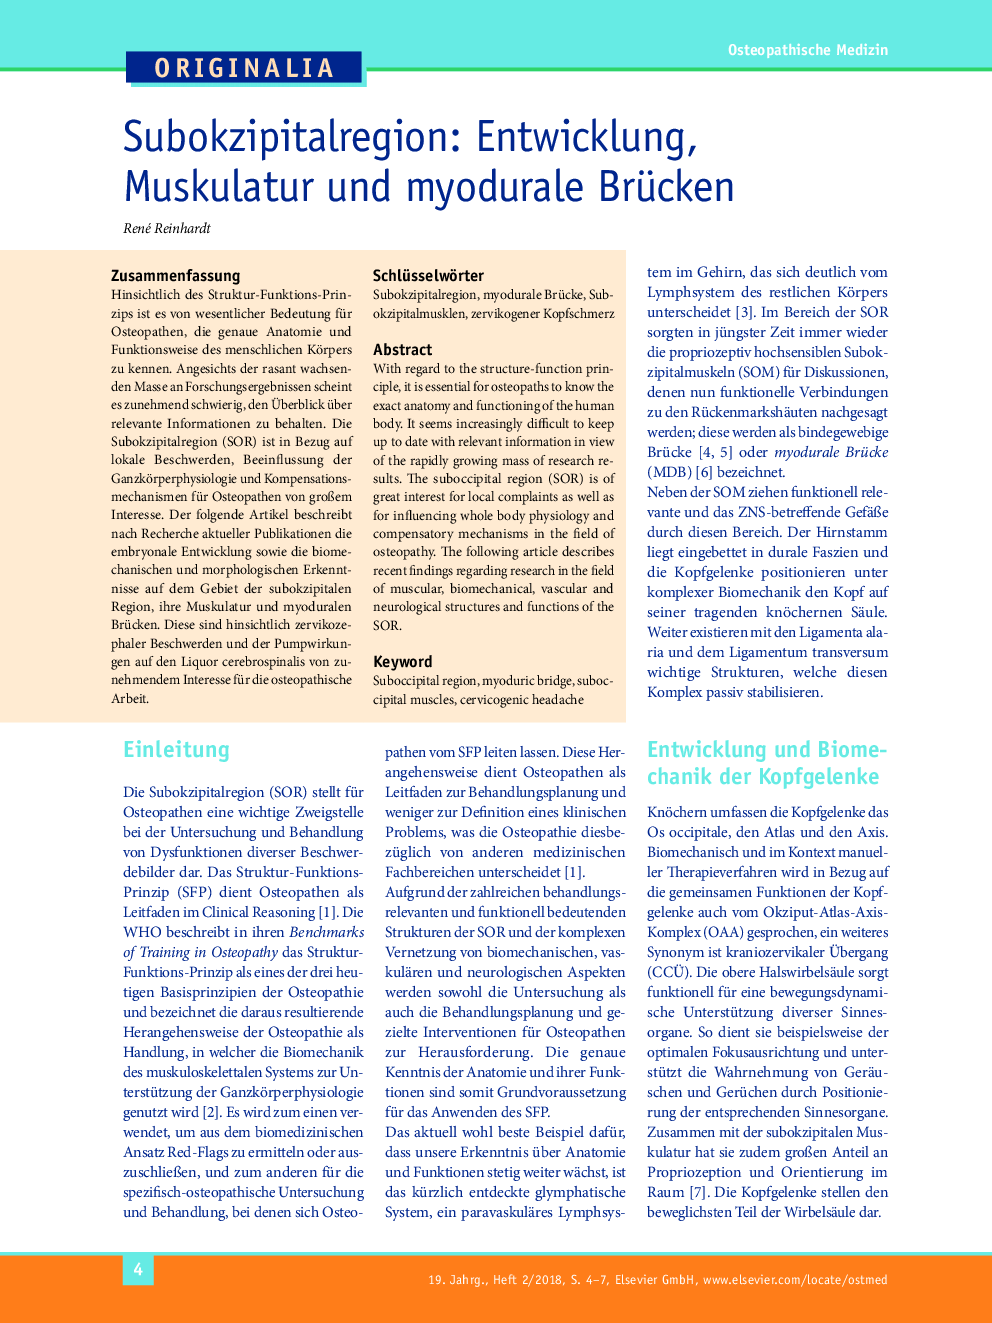 Subokzipitalregion: Entwicklung, Muskulatur und myodurale Brücken